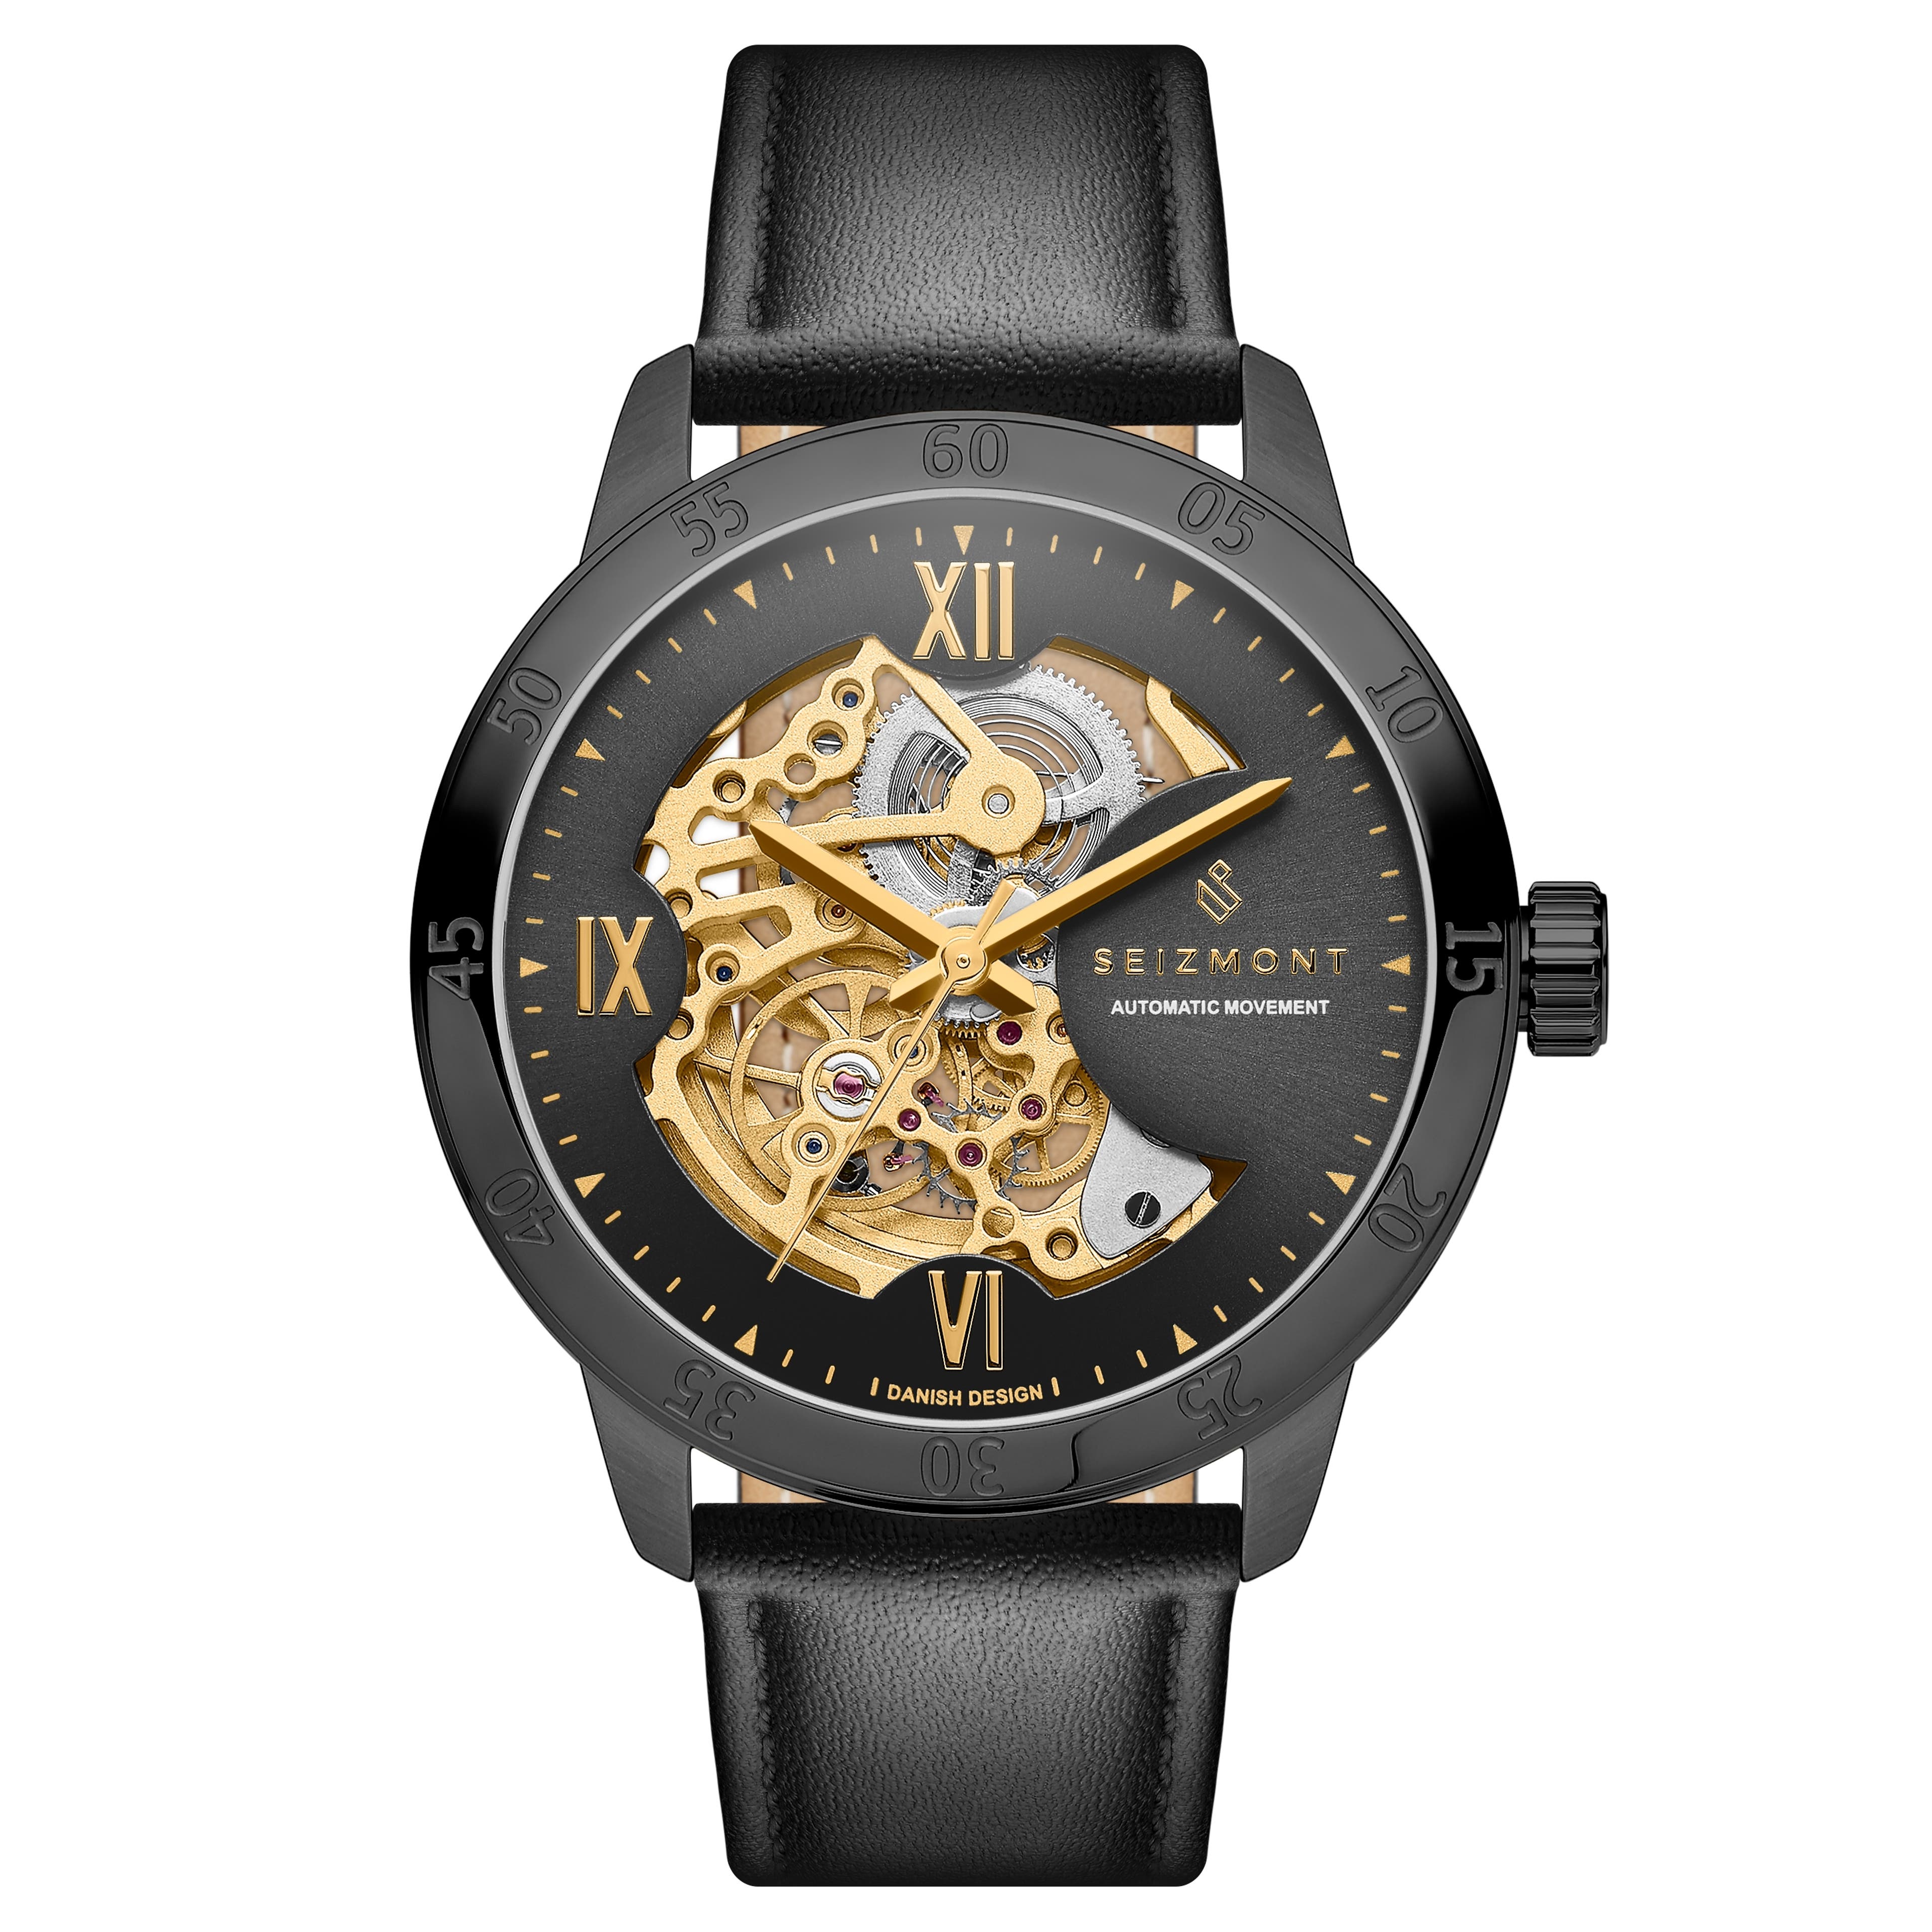 Dante II | Reloj esqueleto de acero inoxidable con correas de cuero en negro y dorado